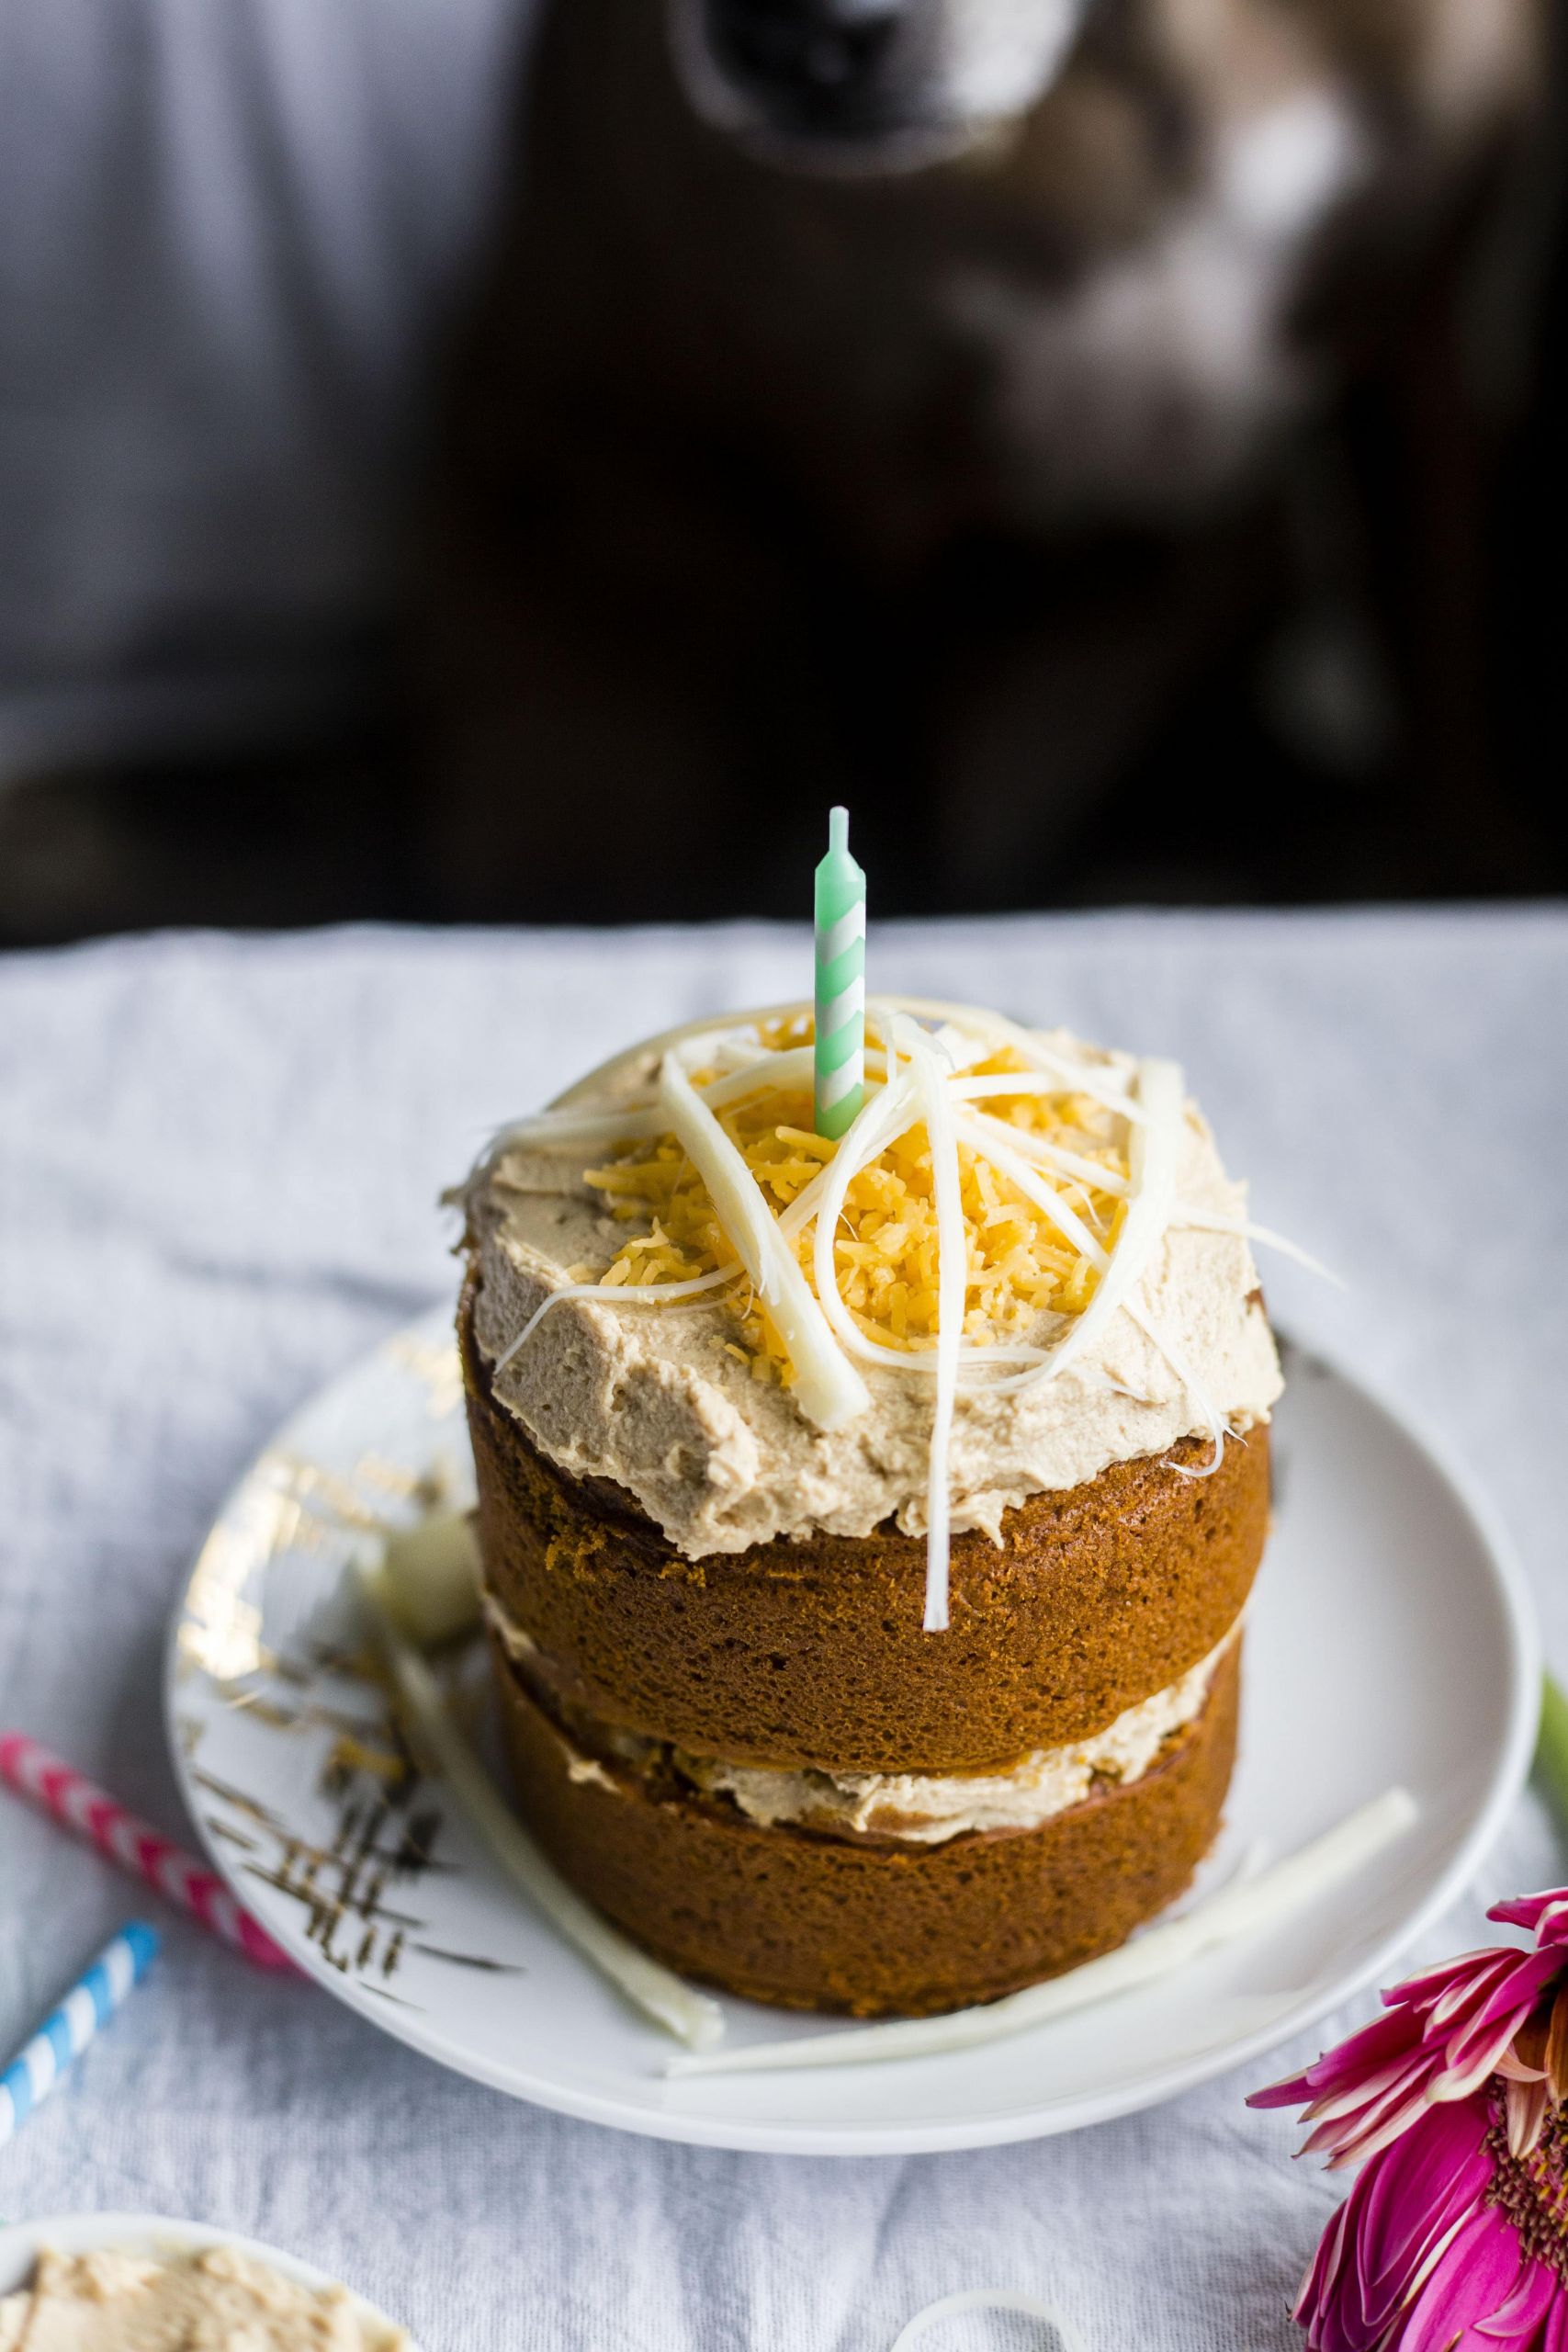 Dog Birthday Cake Recipes
 Mini Dog Birthday Cake